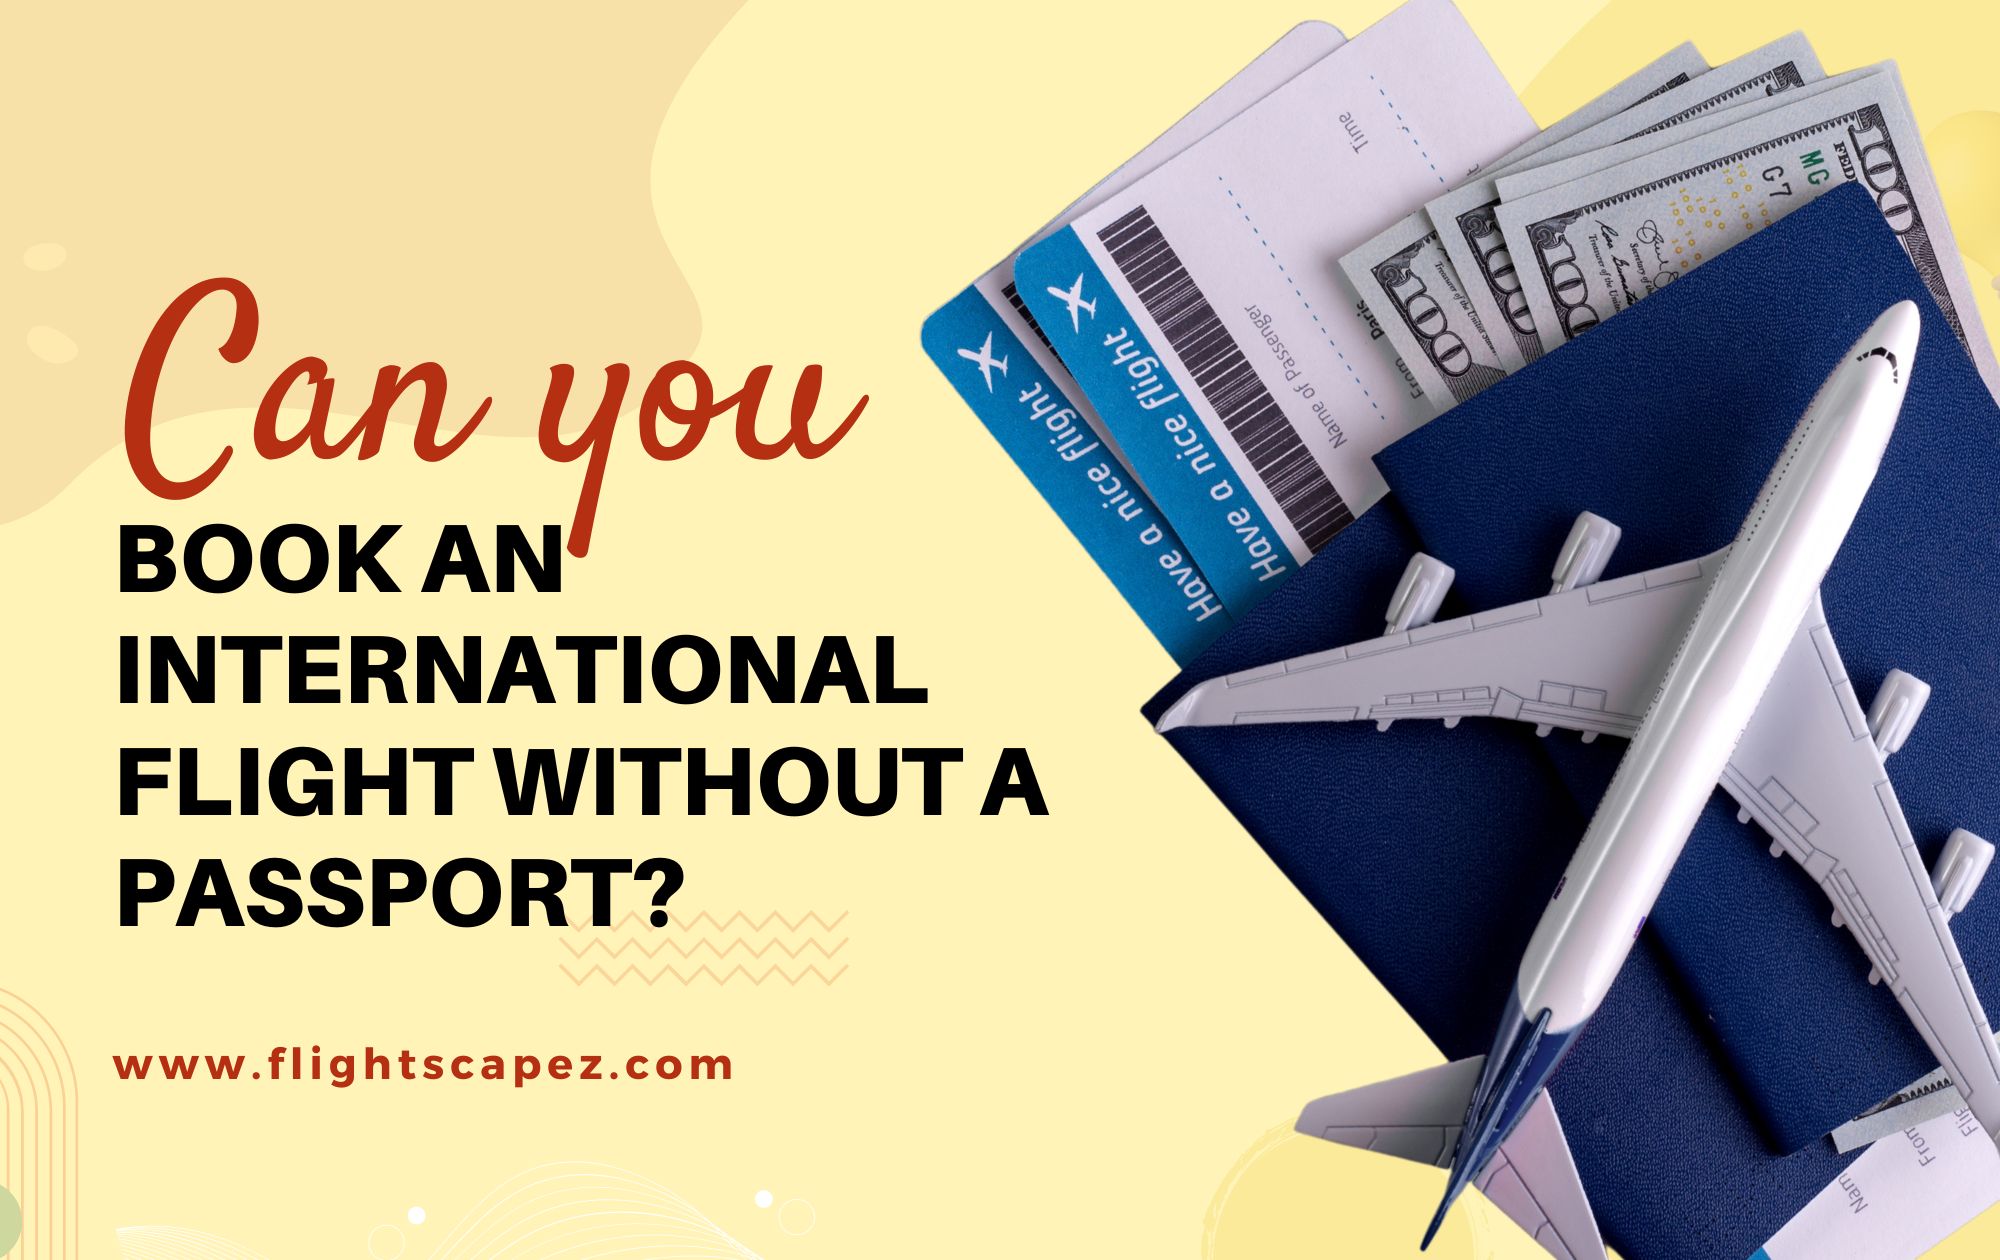 Can you book an international flight without a passport